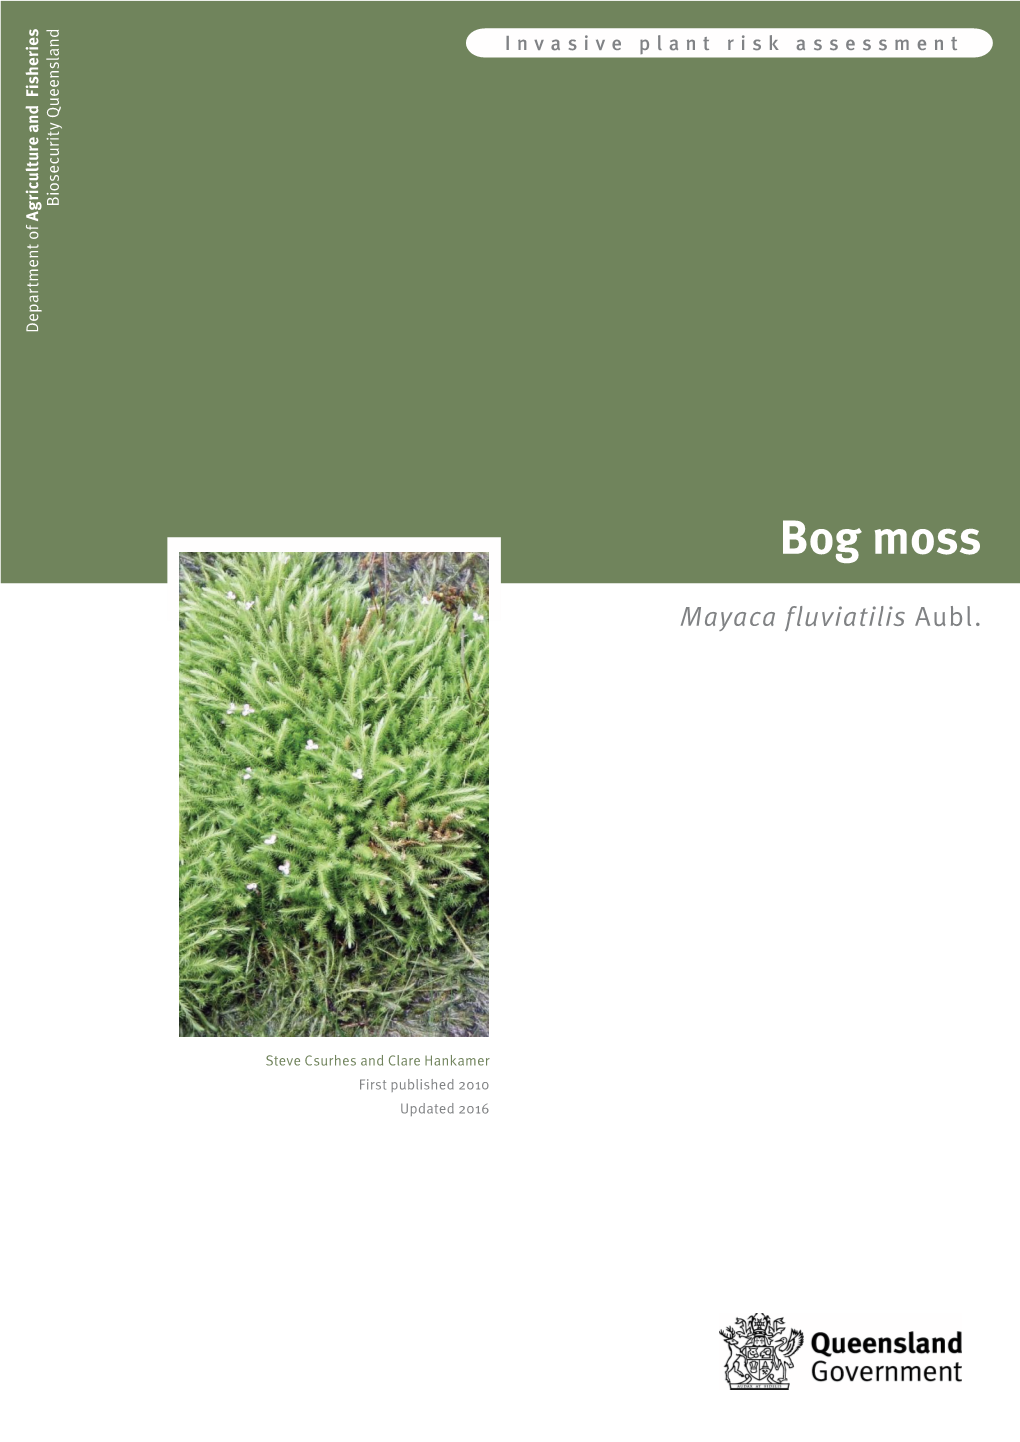 Bog Moss Risk Assessment